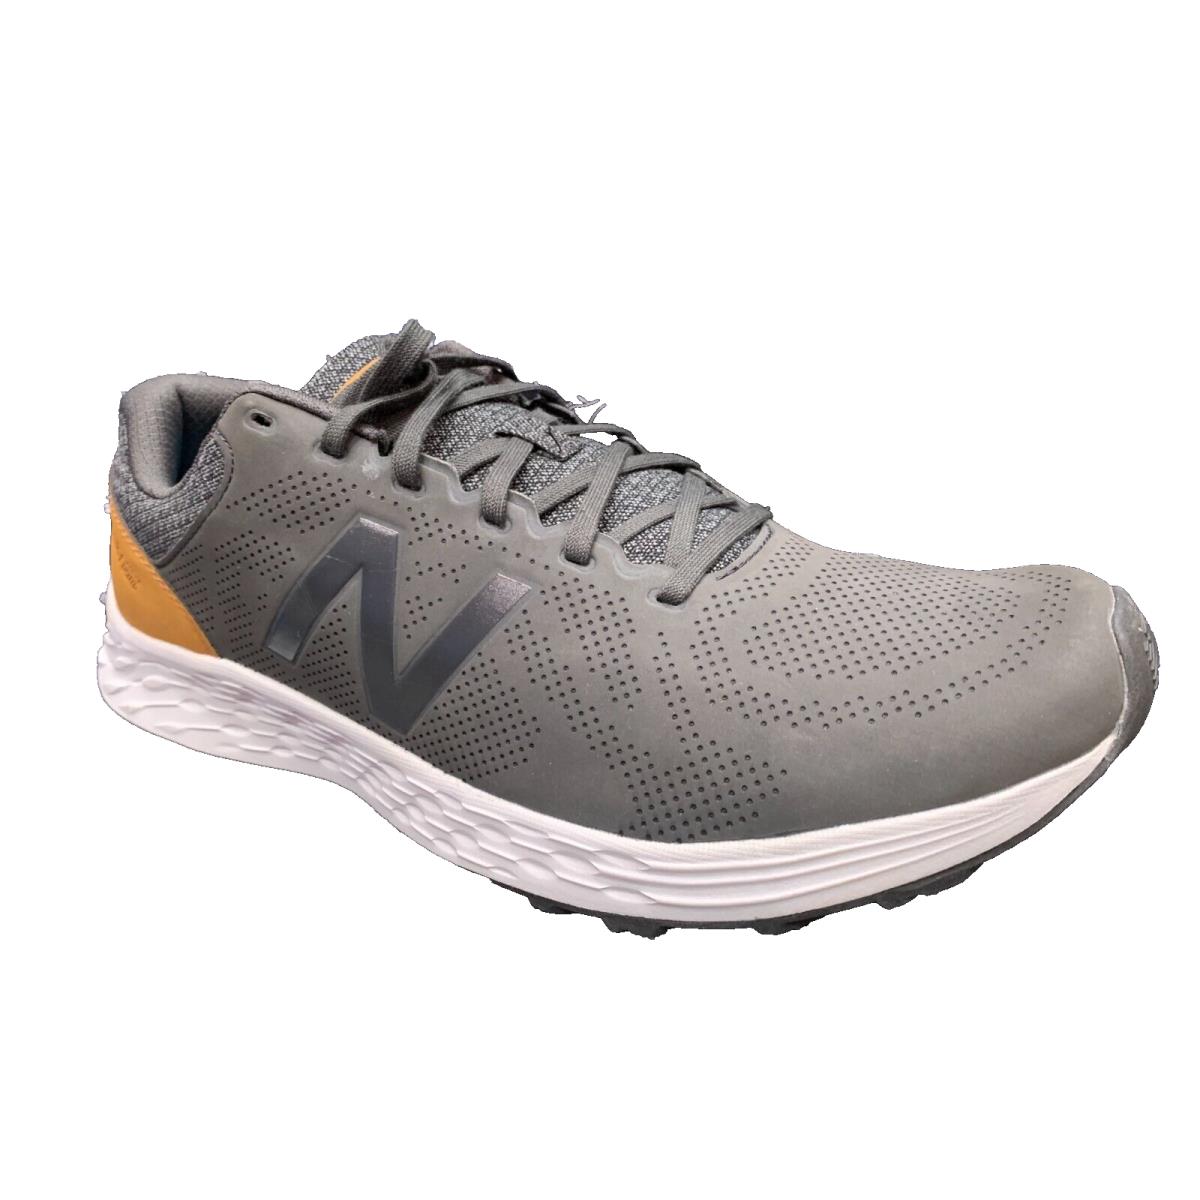 New Balance Mens MARISPP1 Fresh Foam Arishi Athletic Casual Shoes Grey US 12W - Grey/Brown